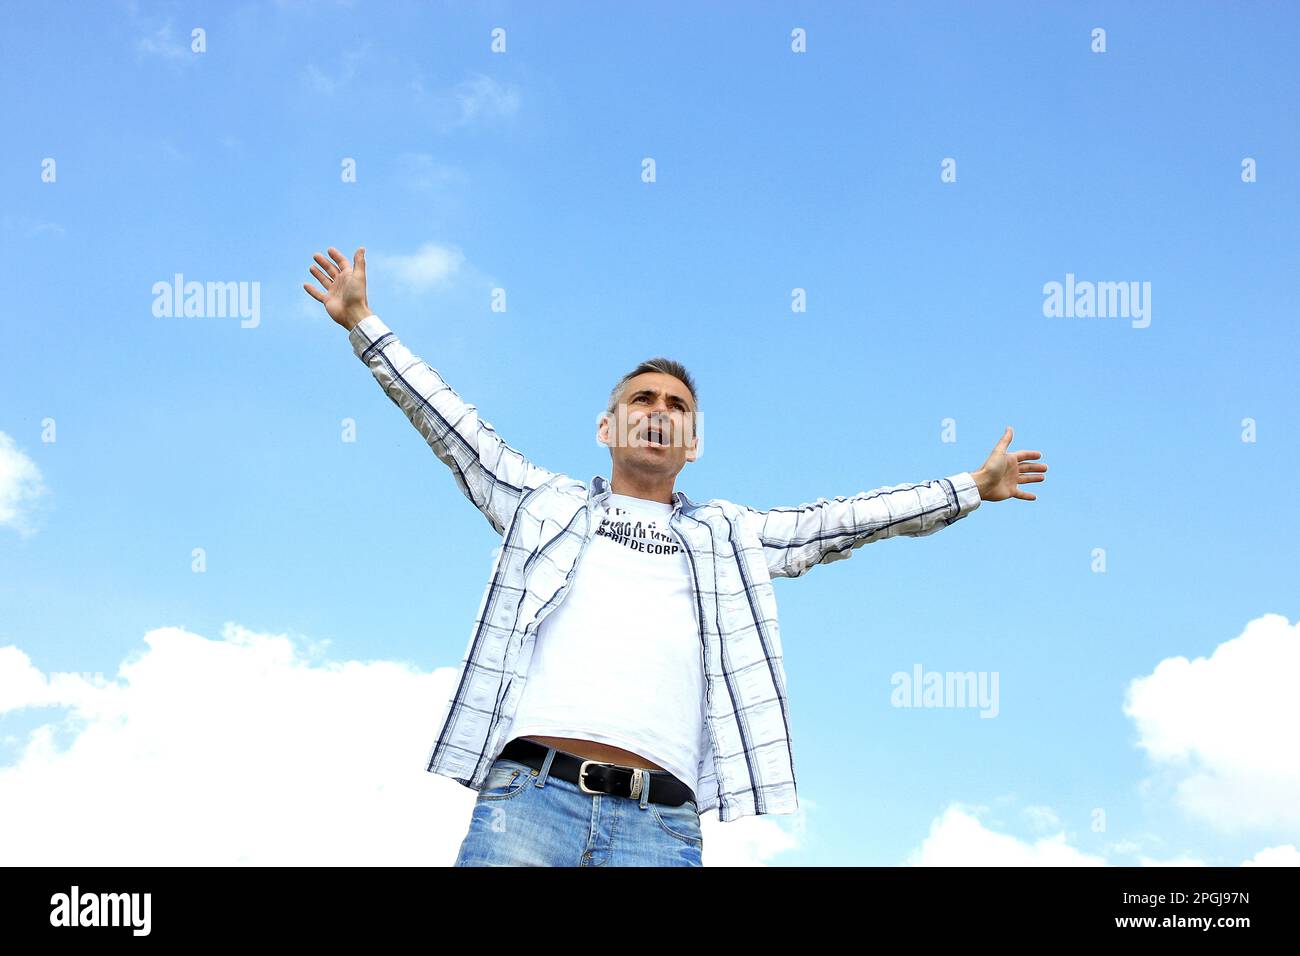 homme levant ses bras dans l'air en jubilation, vue de face Banque D'Images